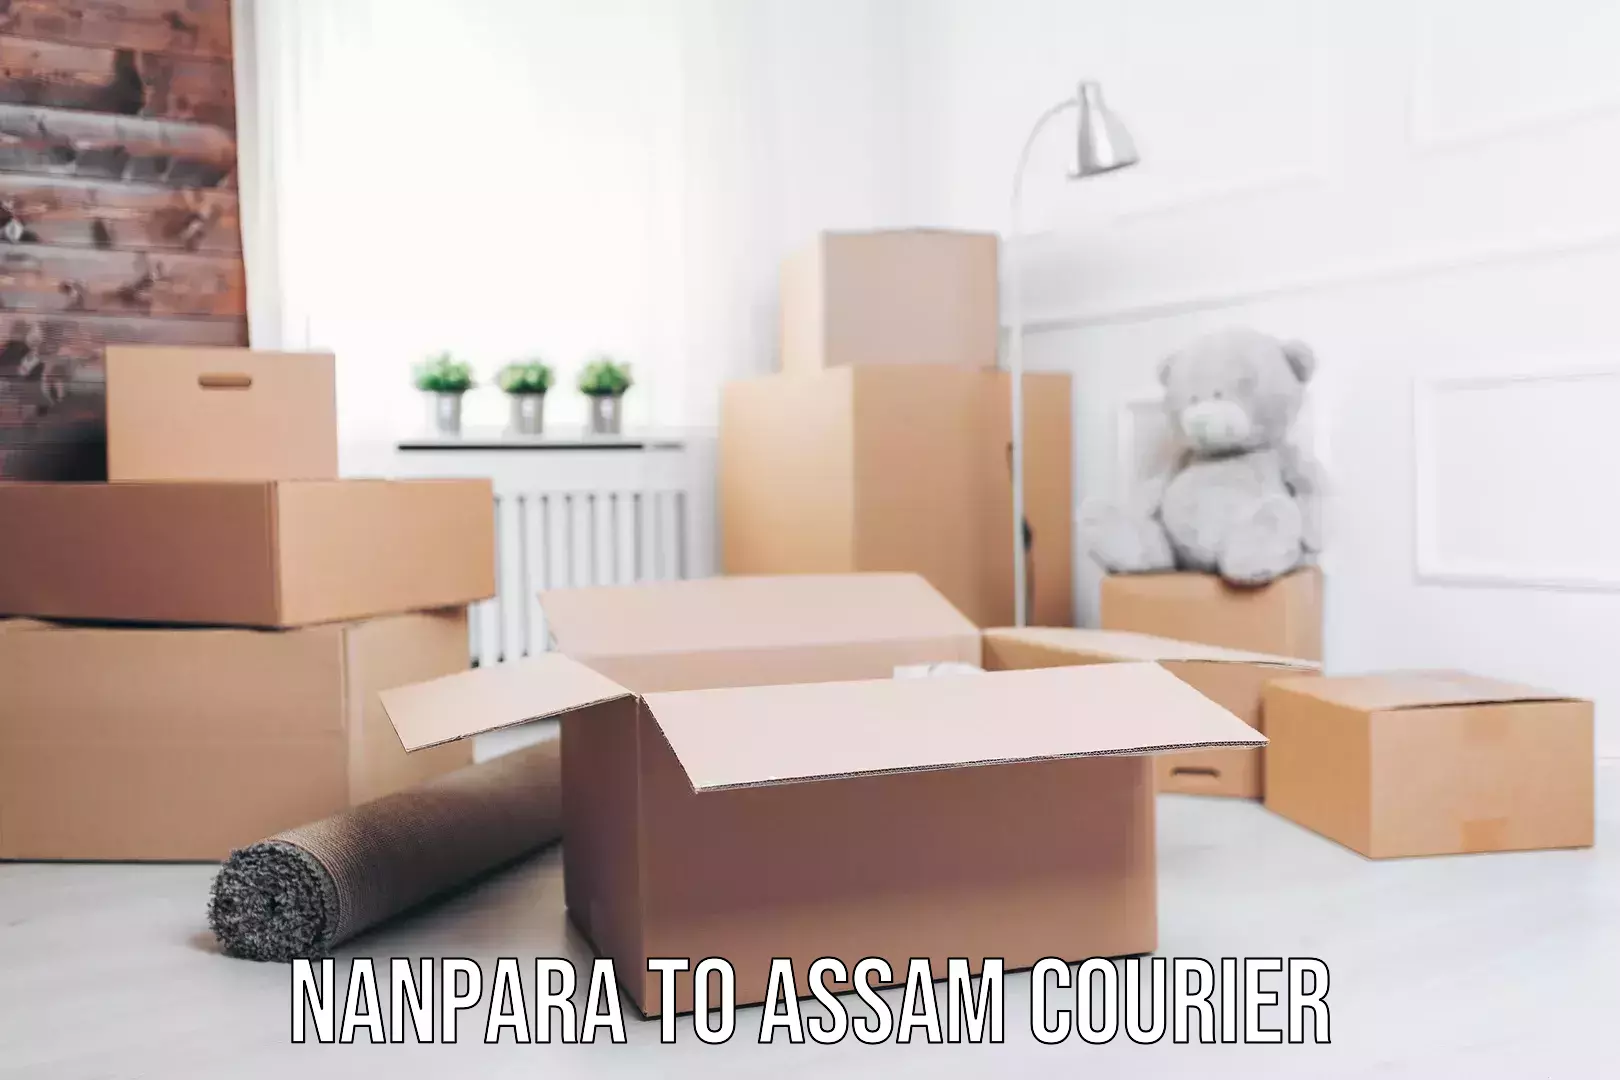 Furniture transport experts Nanpara to Assam